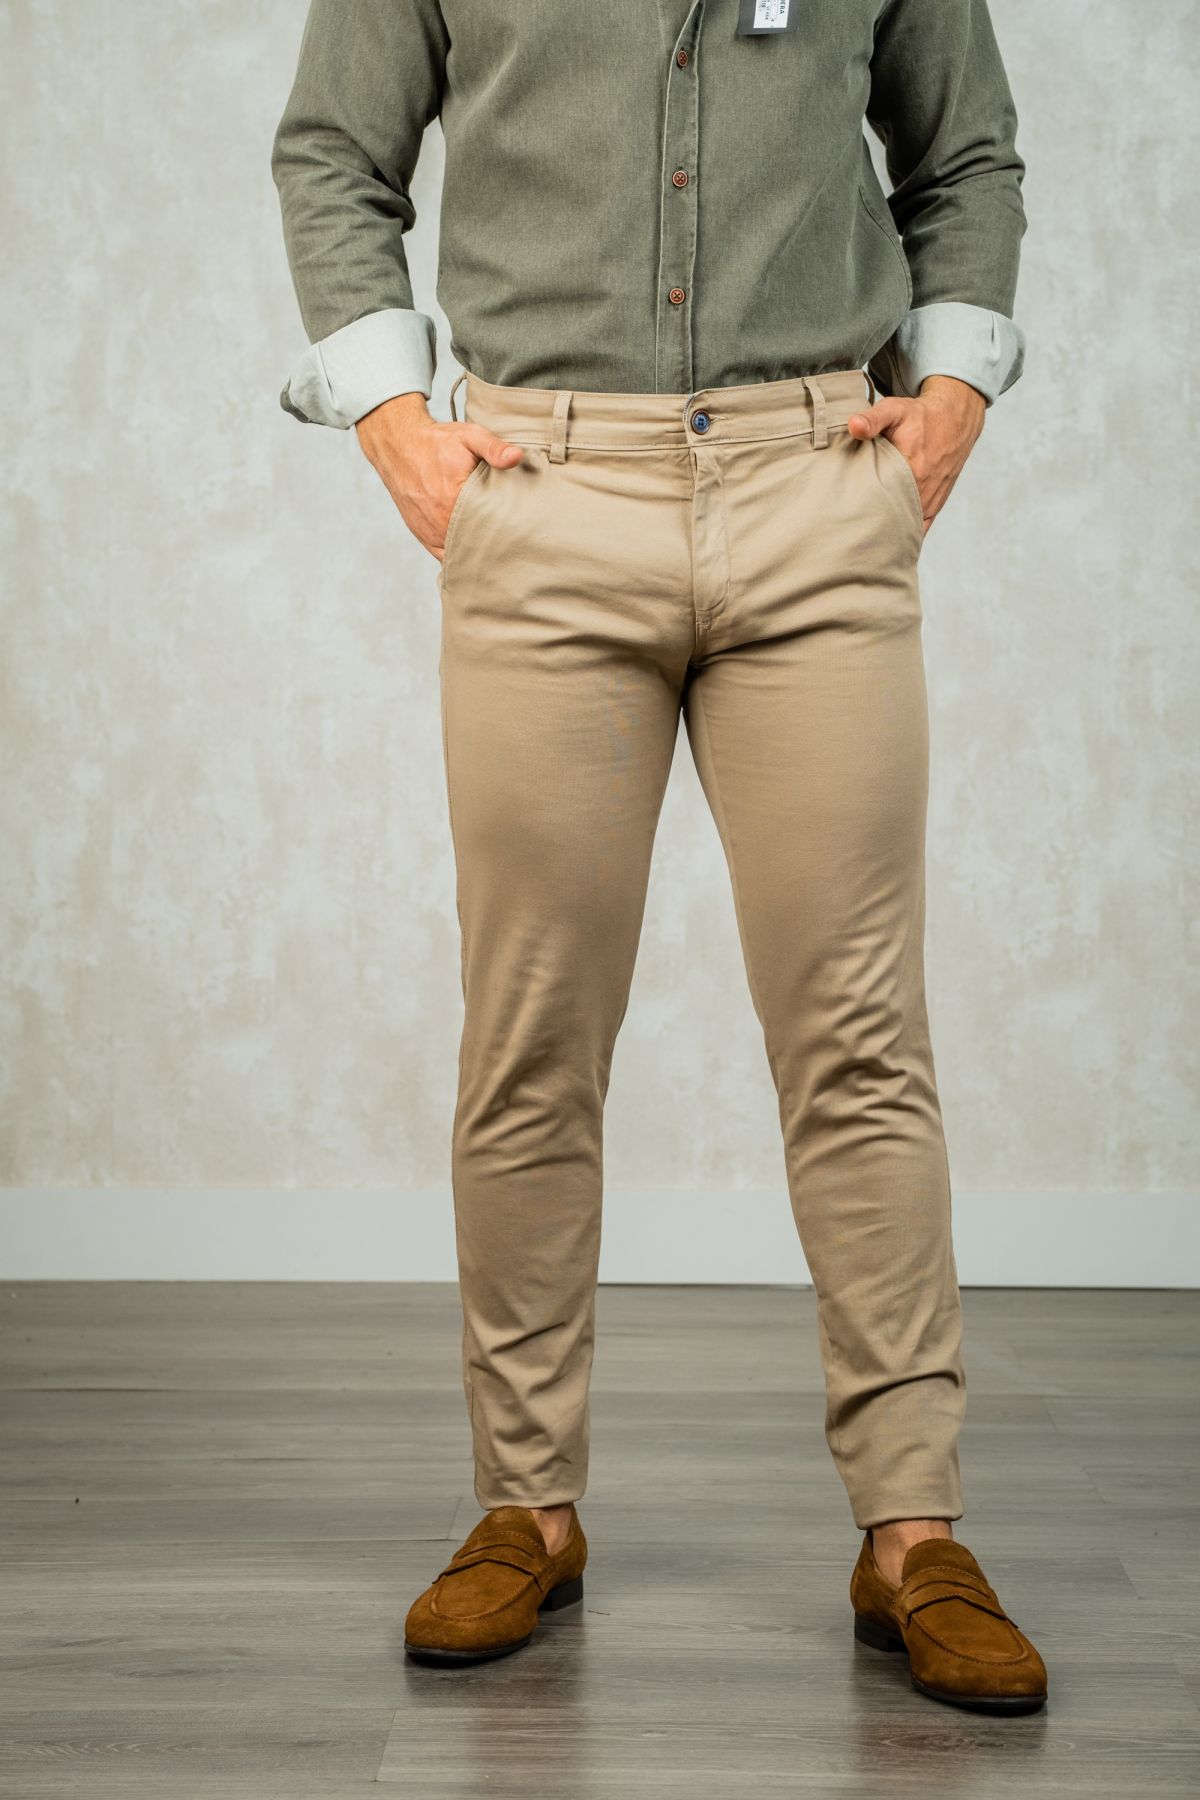 Los pantalones chinos skinny de color camel son un estilo de pantalón ajustado al cuerpo con un corte estrecho en las piernas. El color camel es un tono de marrón claro que es versátil y puede combinarse con una variedad de colores y estilos. Estos pantal